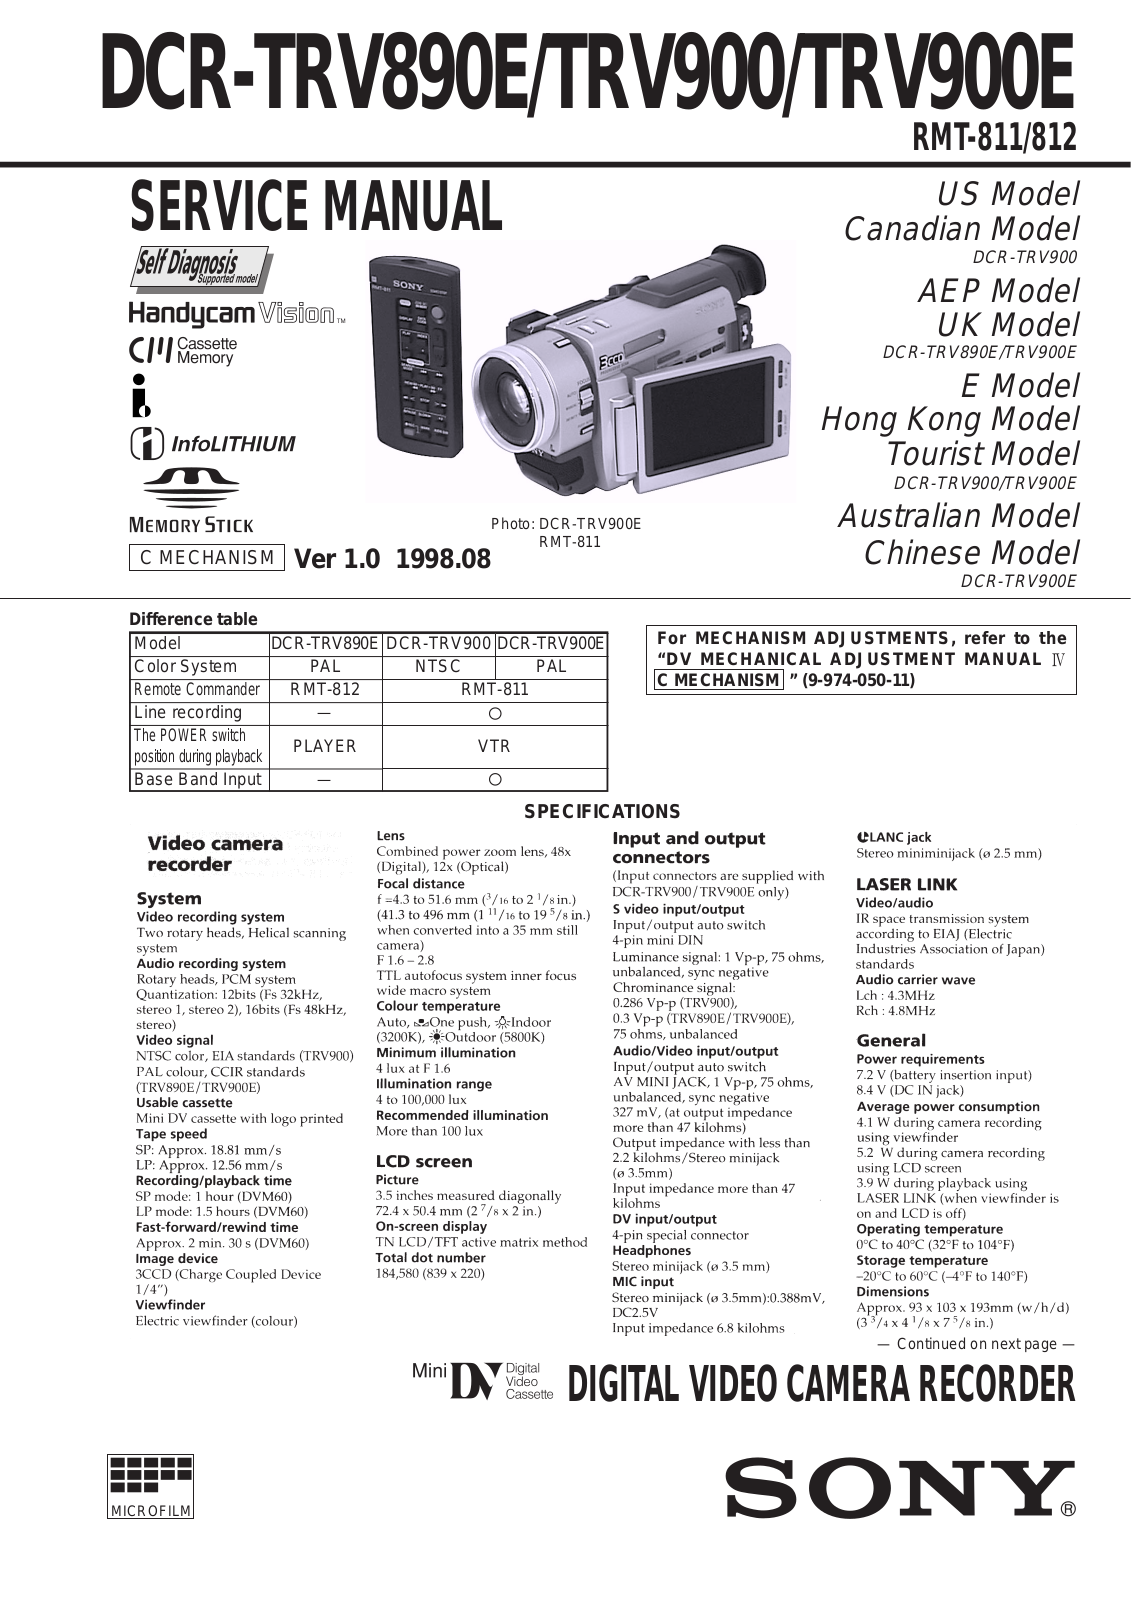 Sony RMT-812, RMT-811, DCR-TRV900E, DCR-TRV900, DCR-TRV890E Service Manual